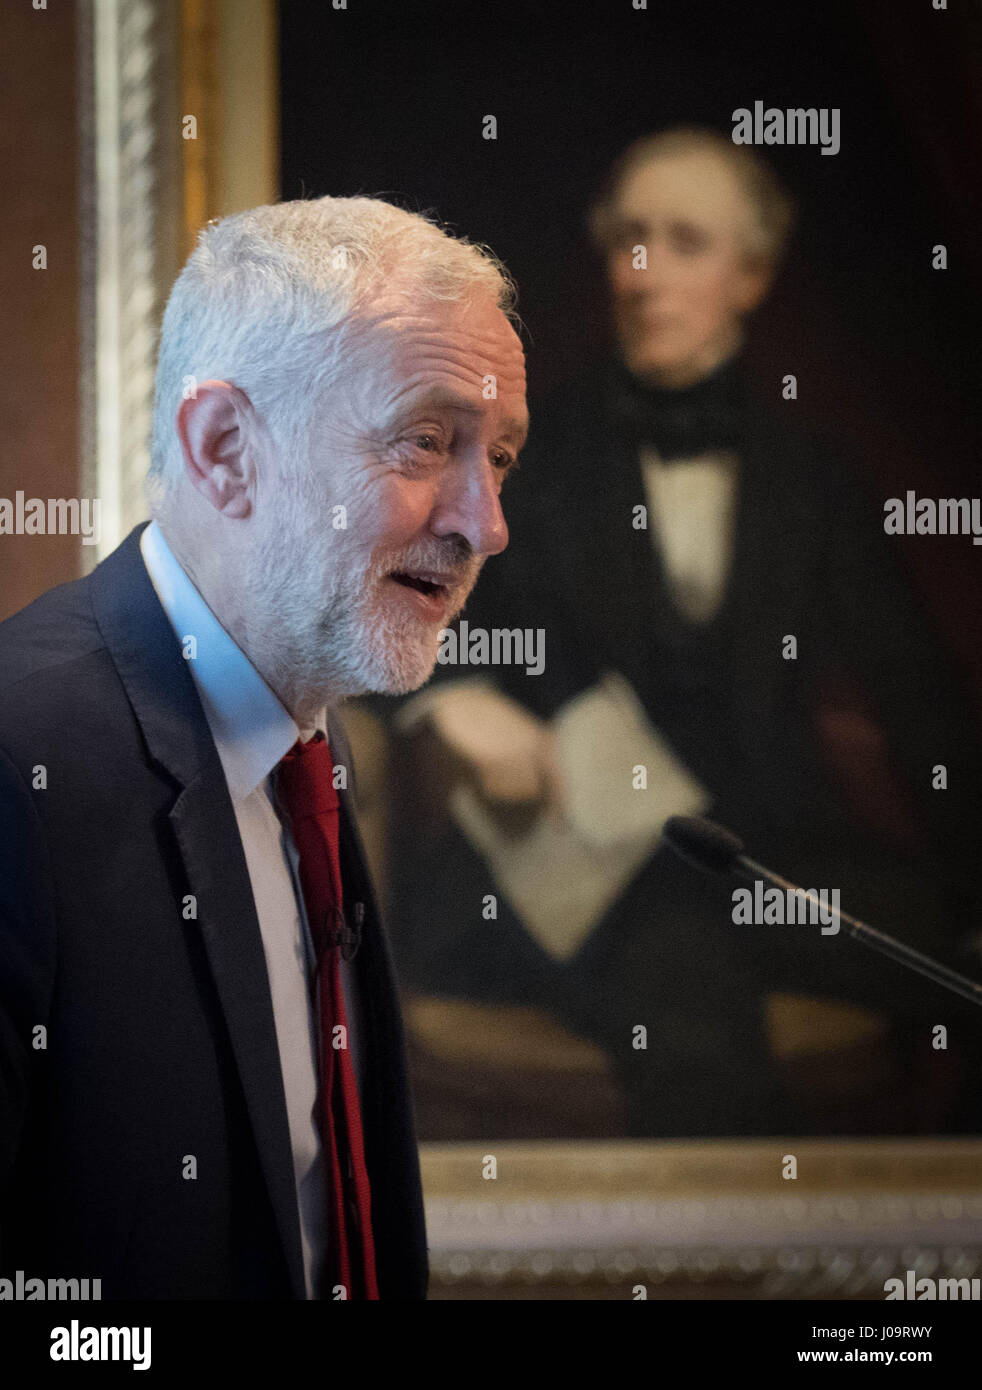 Dirigente del Partido Laborista Jeremy Corbyn pronuncia un discurso en la Federación de Pequeñas Empresas en Londres, donde prometió combatir la cultura de la morosidad que está obligando a más de 50.000 pequeñas empresas fuera del negocio cada año. Foto de stock